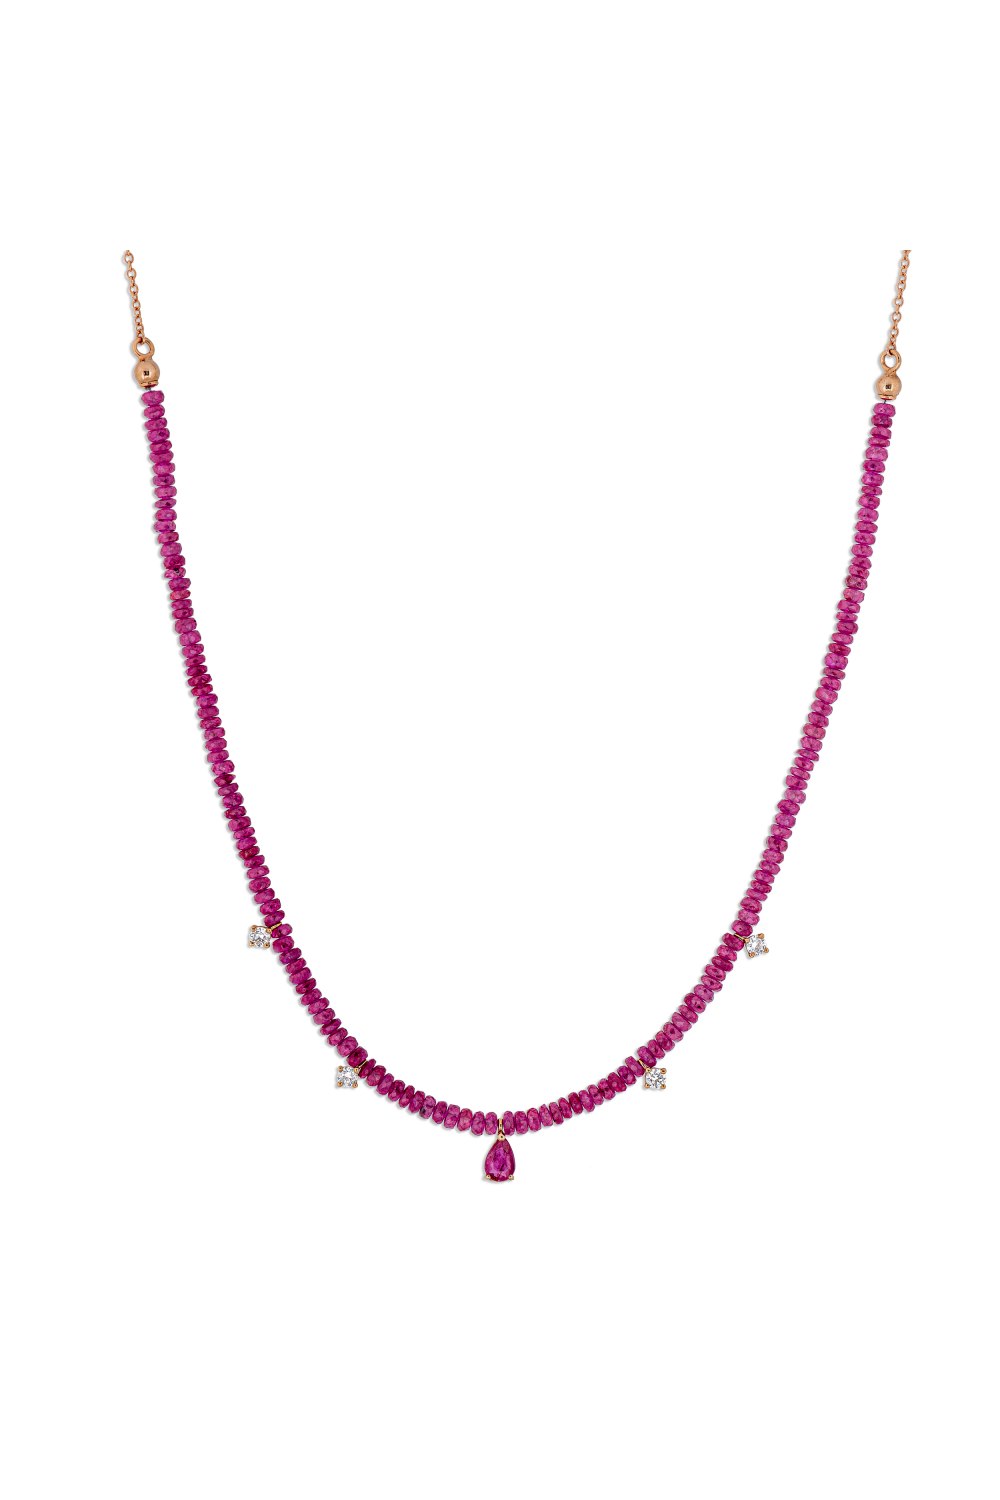 KESSARIS - Ruby Diamond Necklace